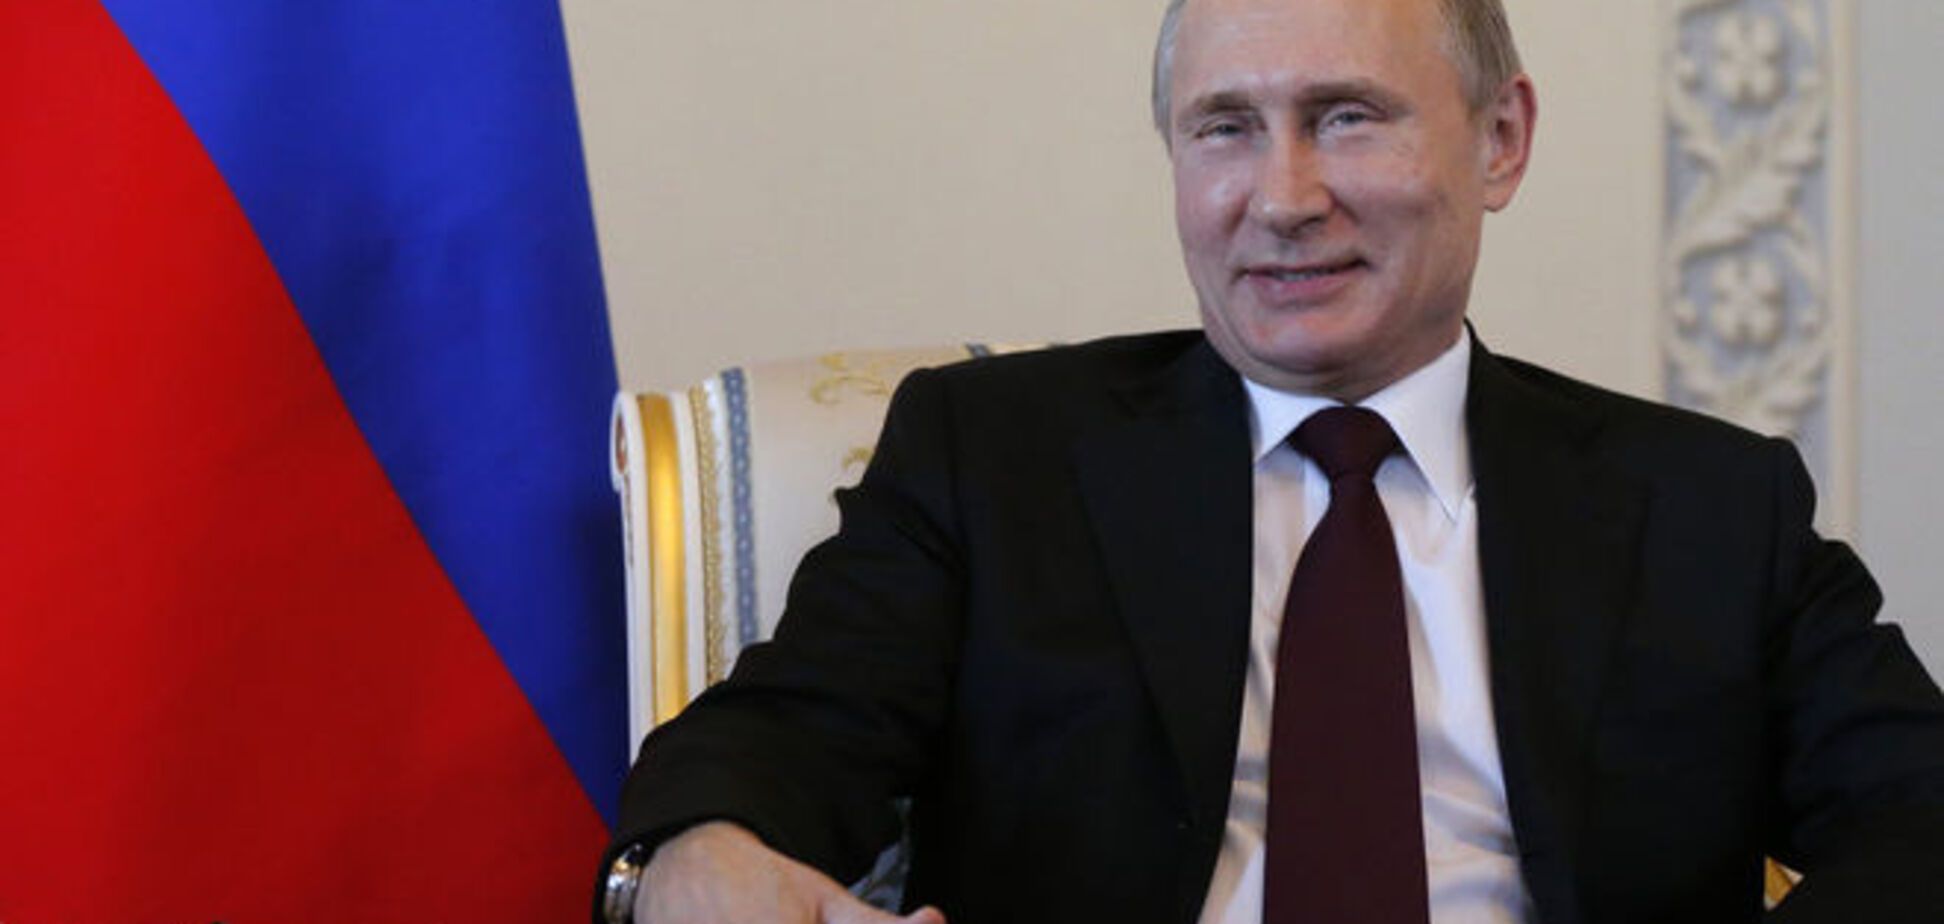 Захід прорахувався із санкціями, на Путіна вони не діють - Newsweek